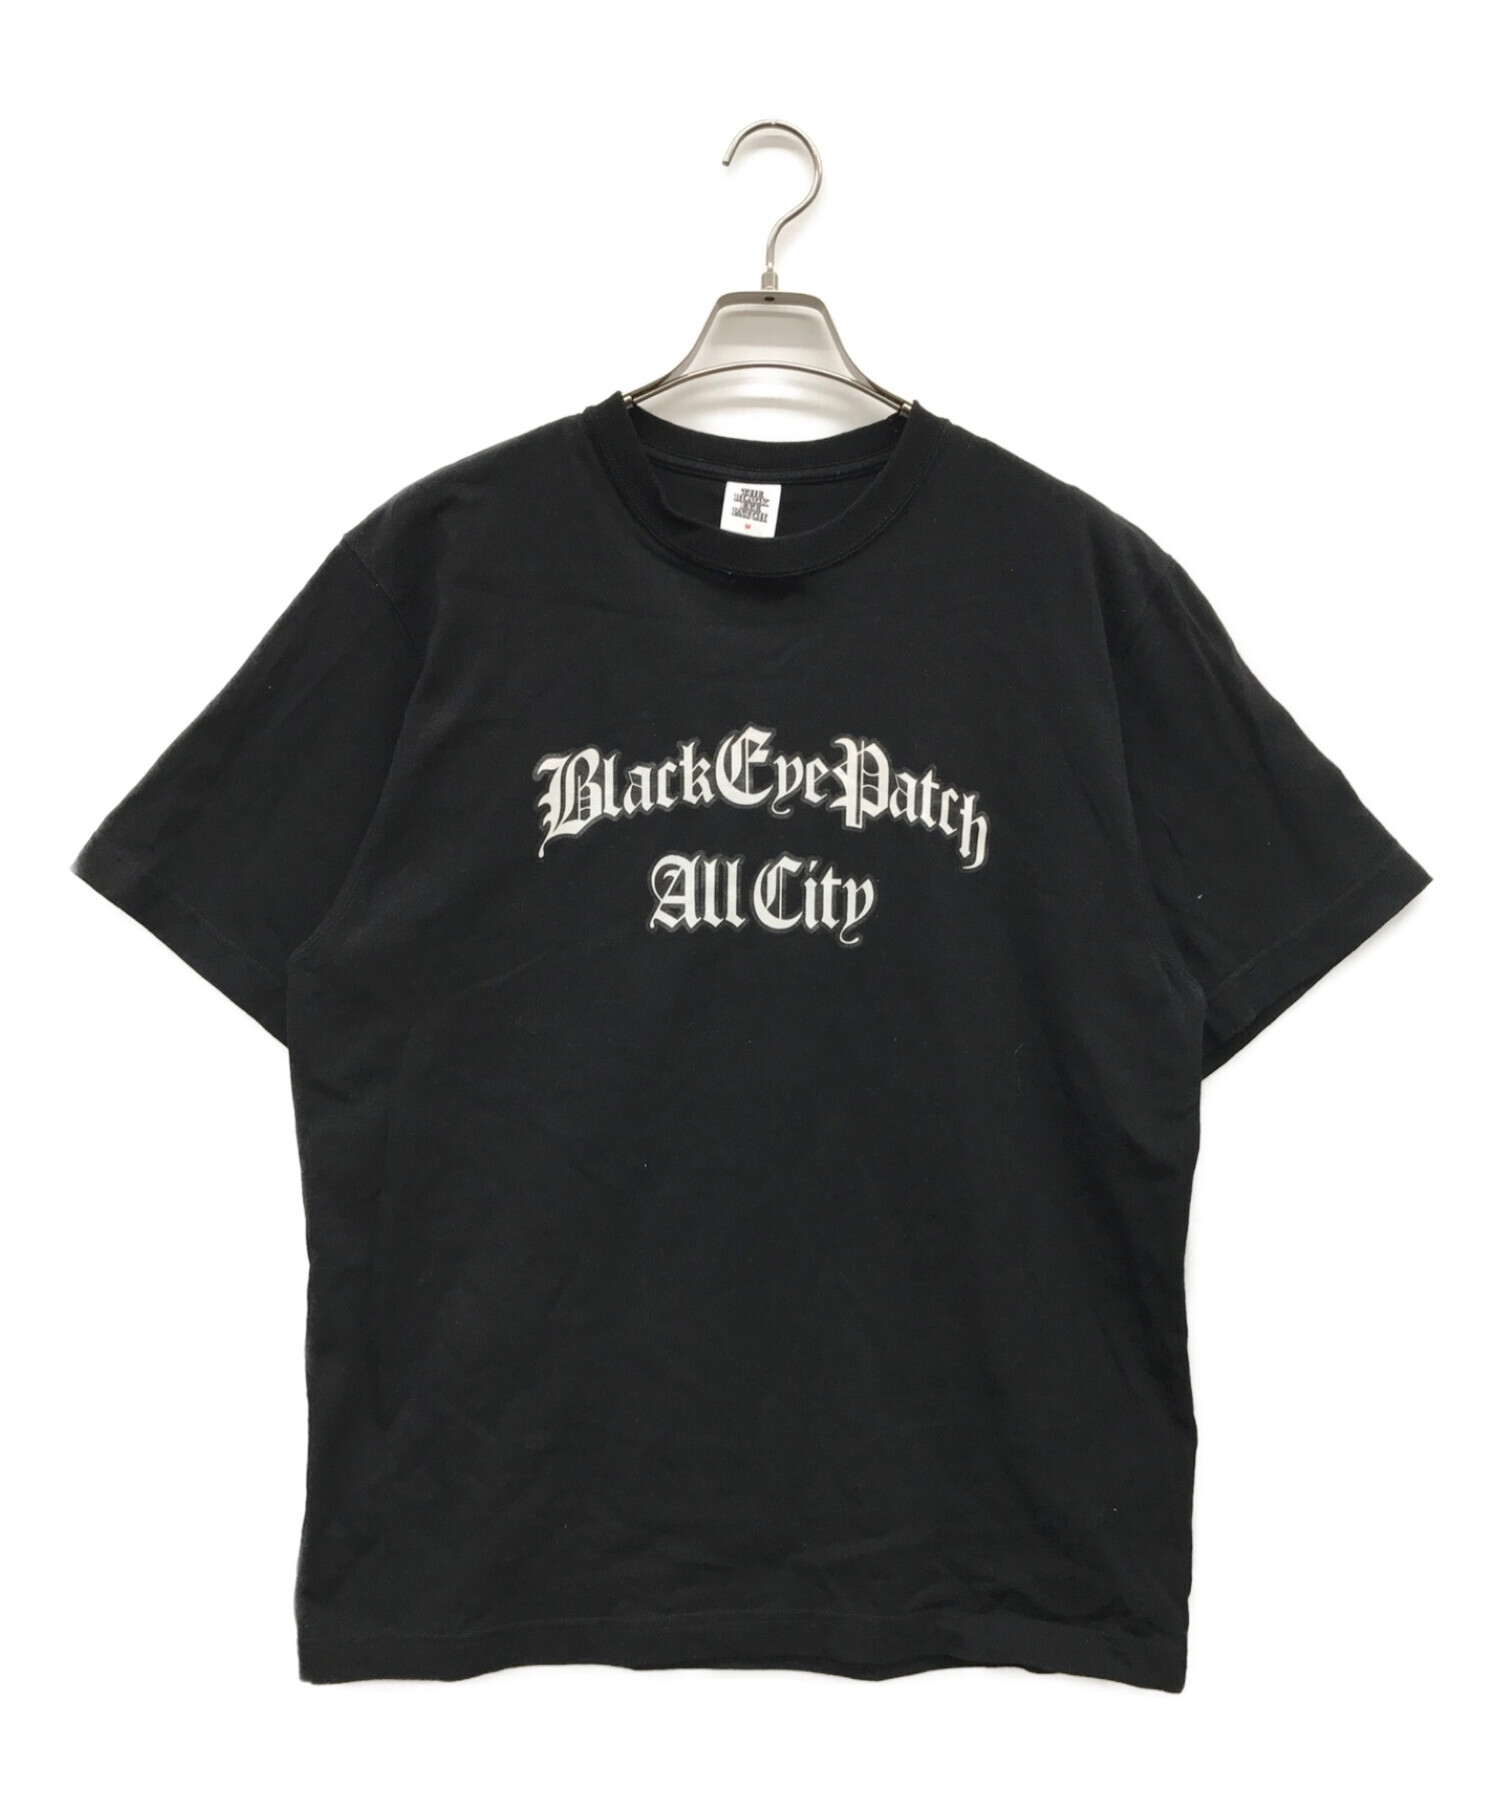 THE BLACK EYE PATCH (ザブラックアイパッチ) プリントTシャツ ブラック サイズ:M